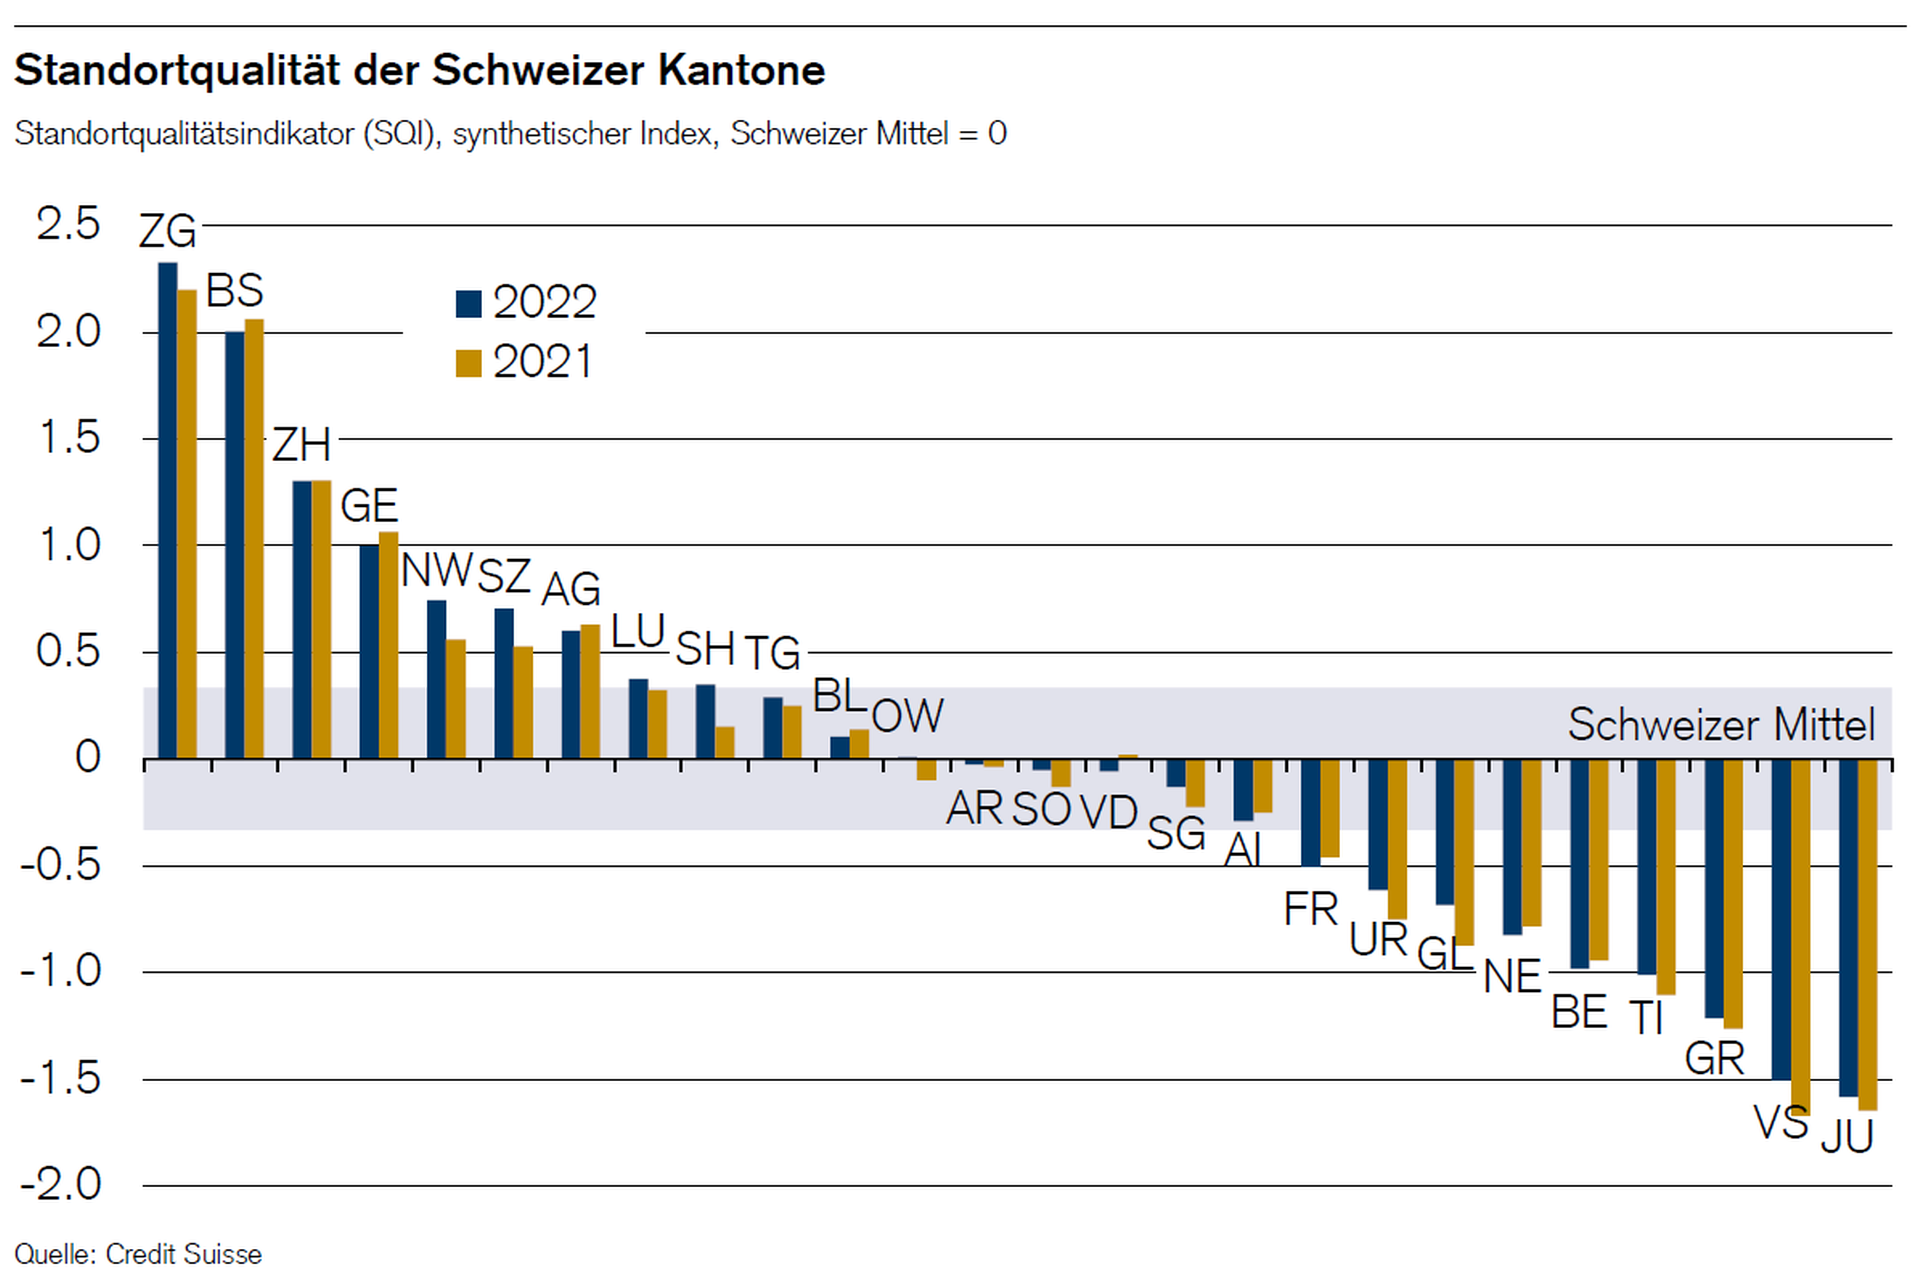 Graphic of Standortqualität der Schweizer Kantone